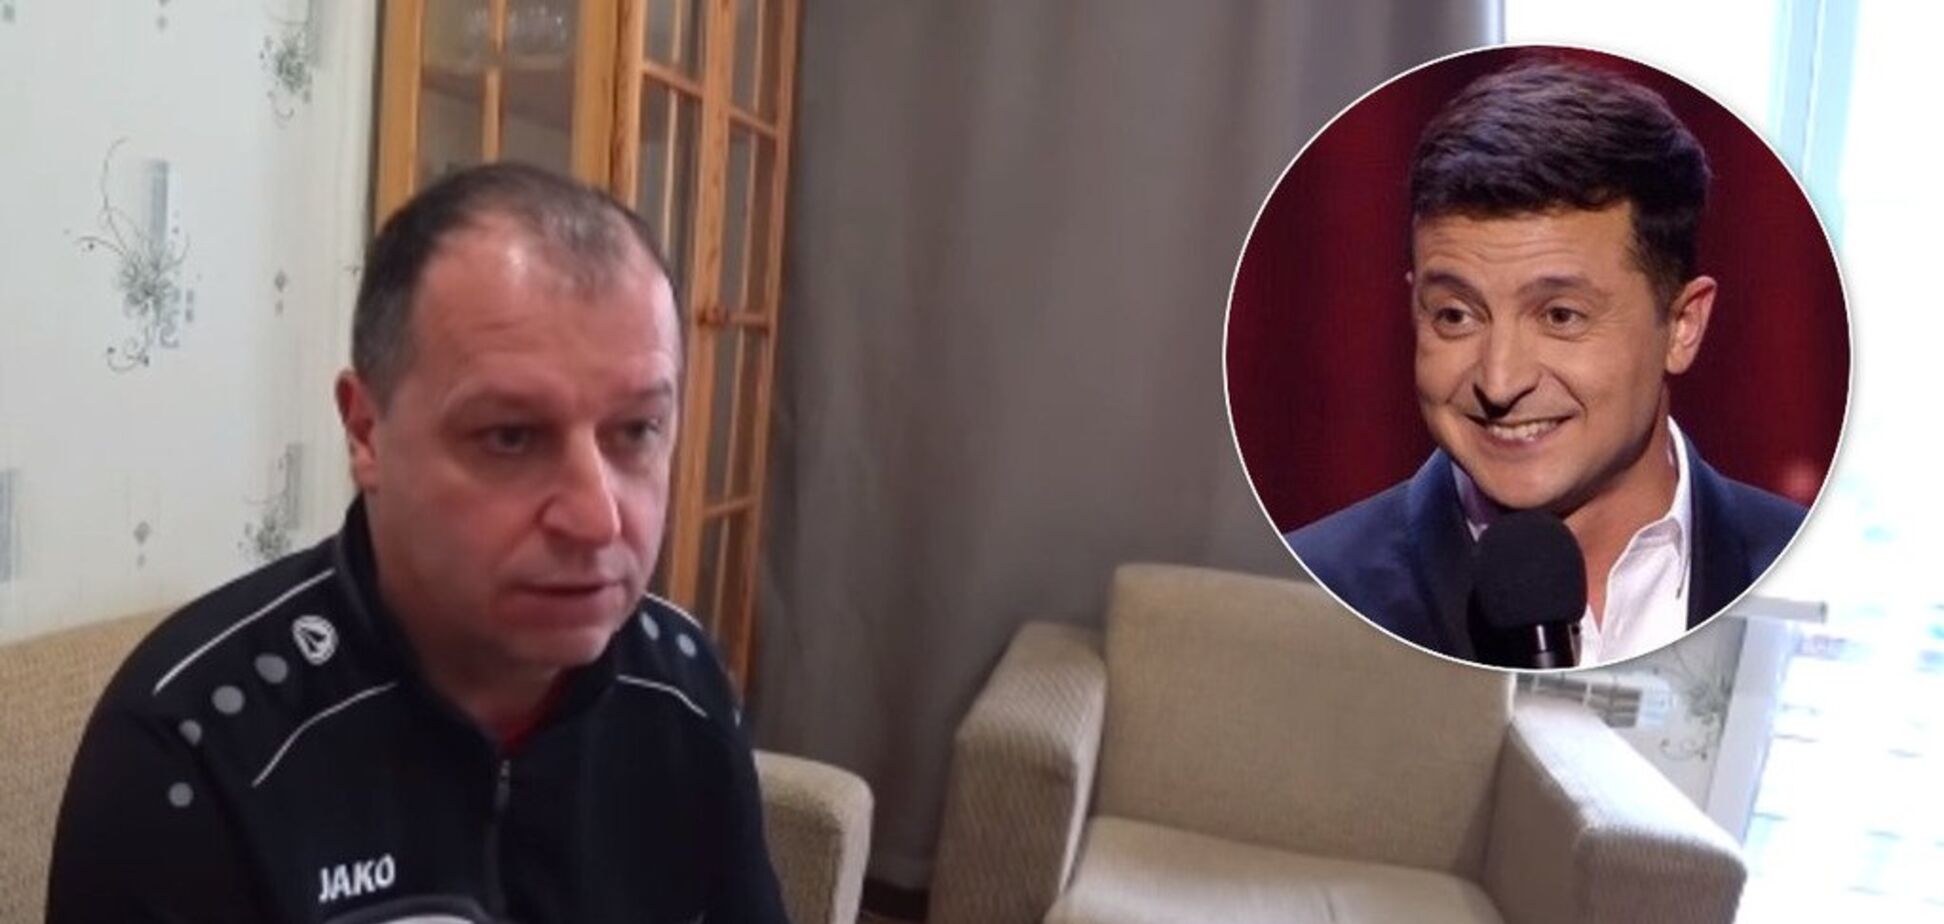 'Столько фейков ненужных': украинский тренер высказался про Зеленского